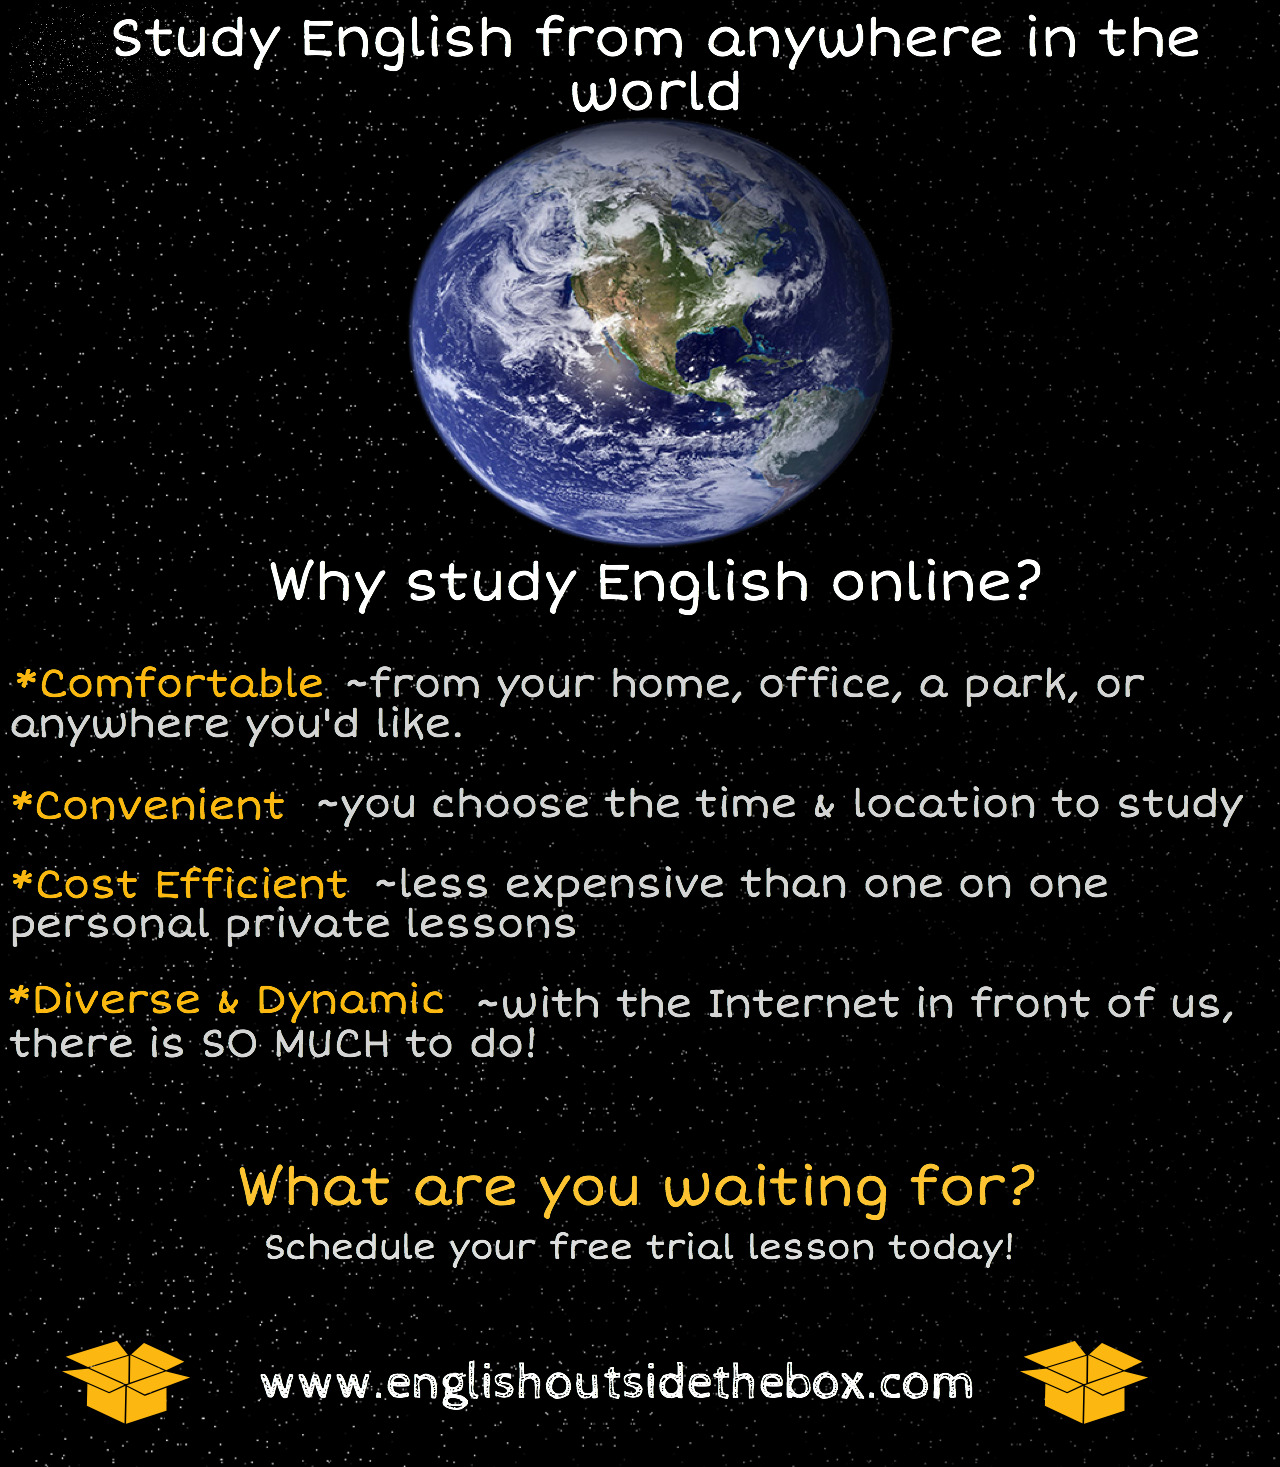 Study English online at www.englishoutsidethebox.com